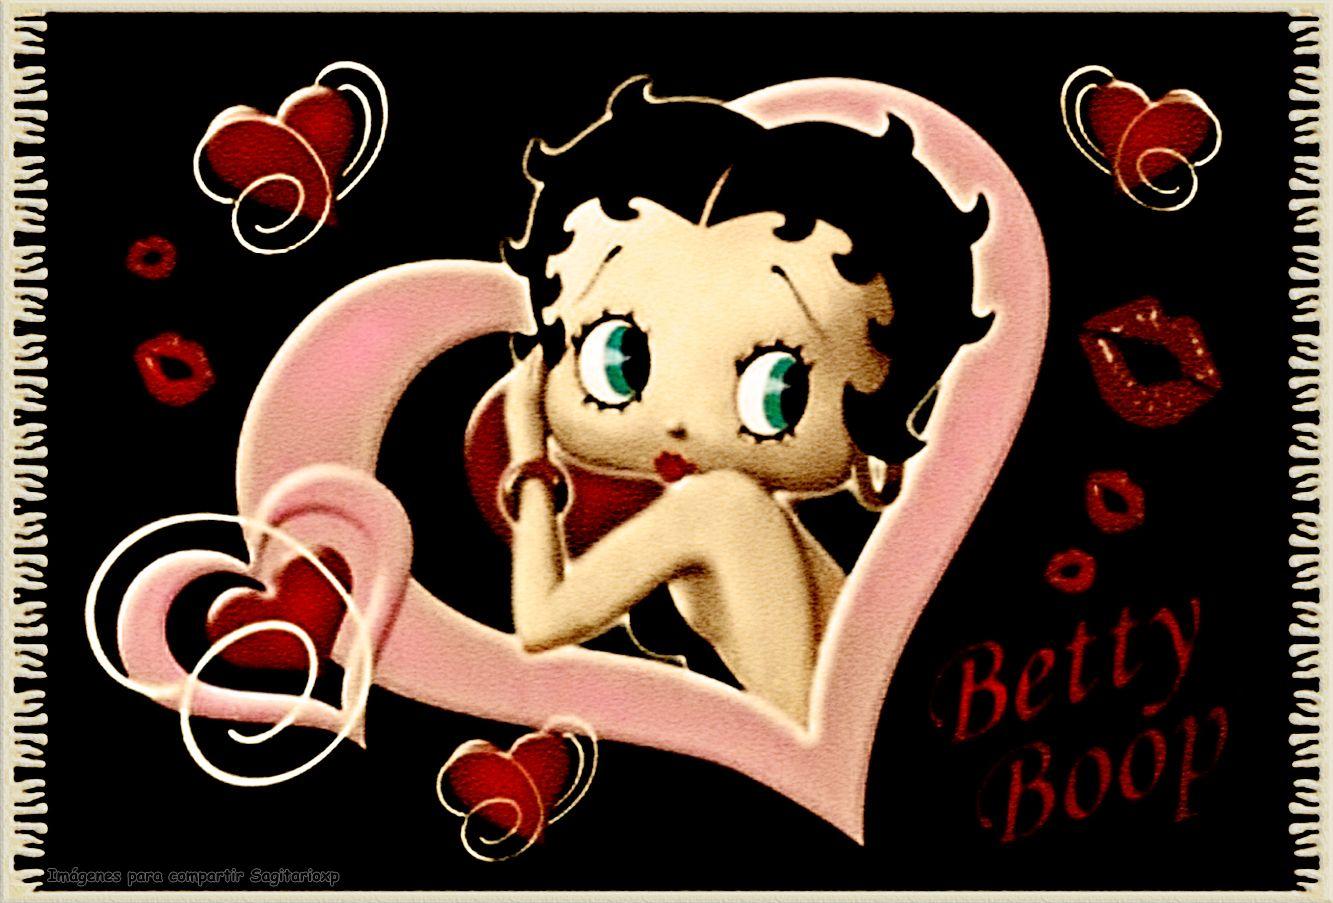 Betty Boop Wallpaper For Walls.com HD Wallpaper